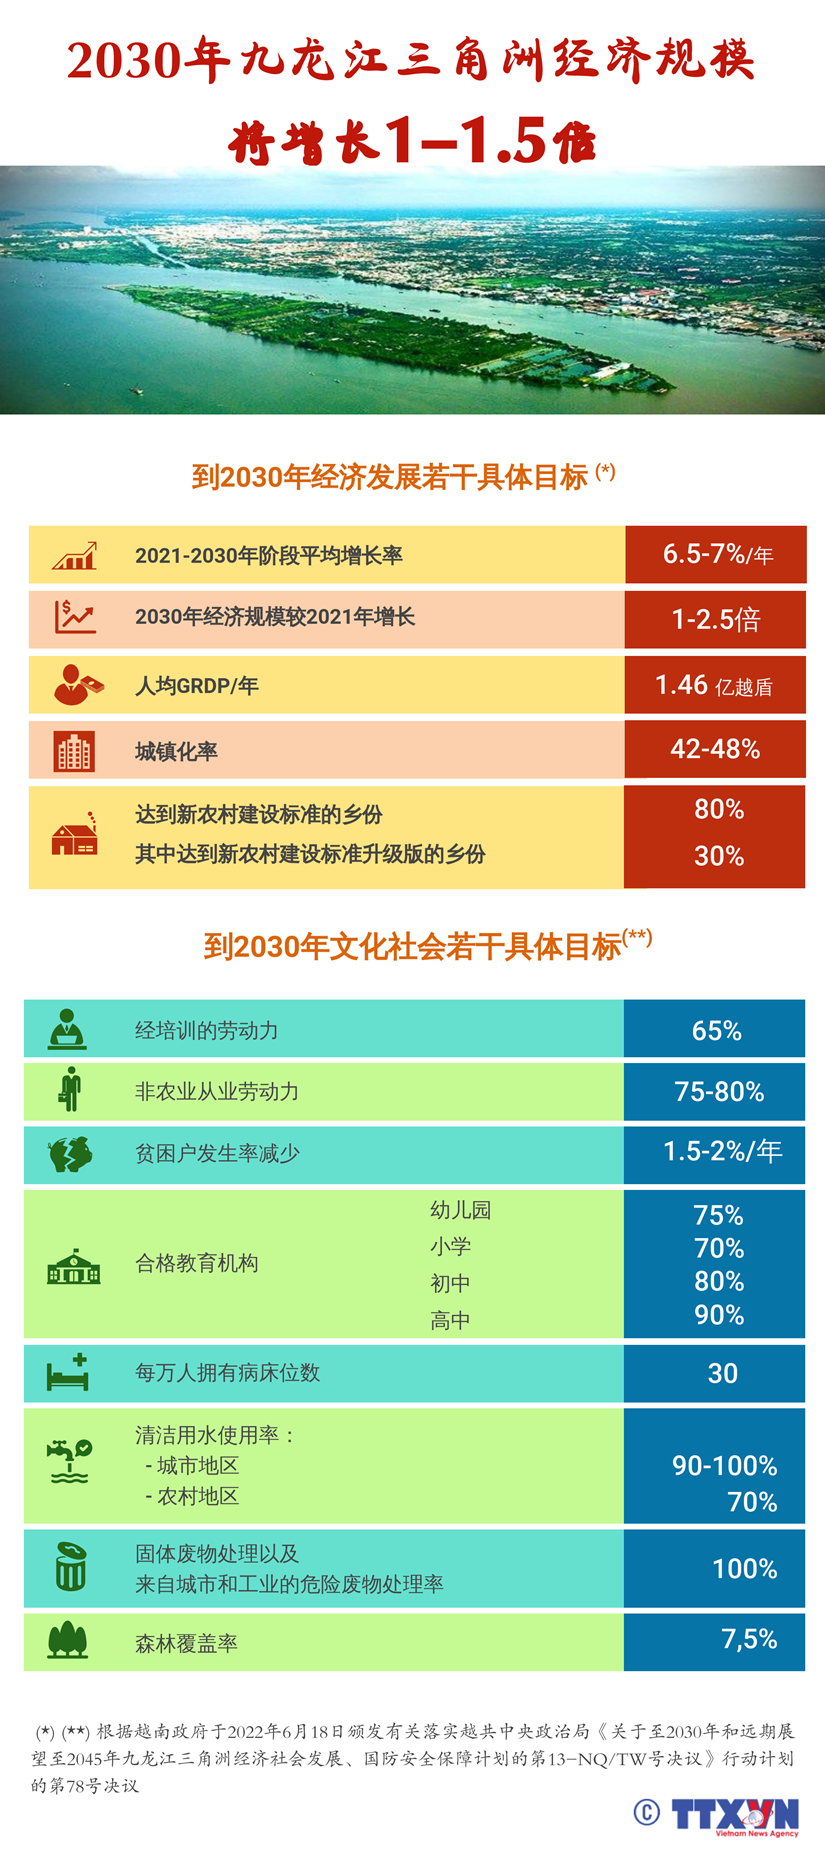 图表新闻：2030年九龙江三角洲经济规模将增长1-1.5倍 hinh anh 1